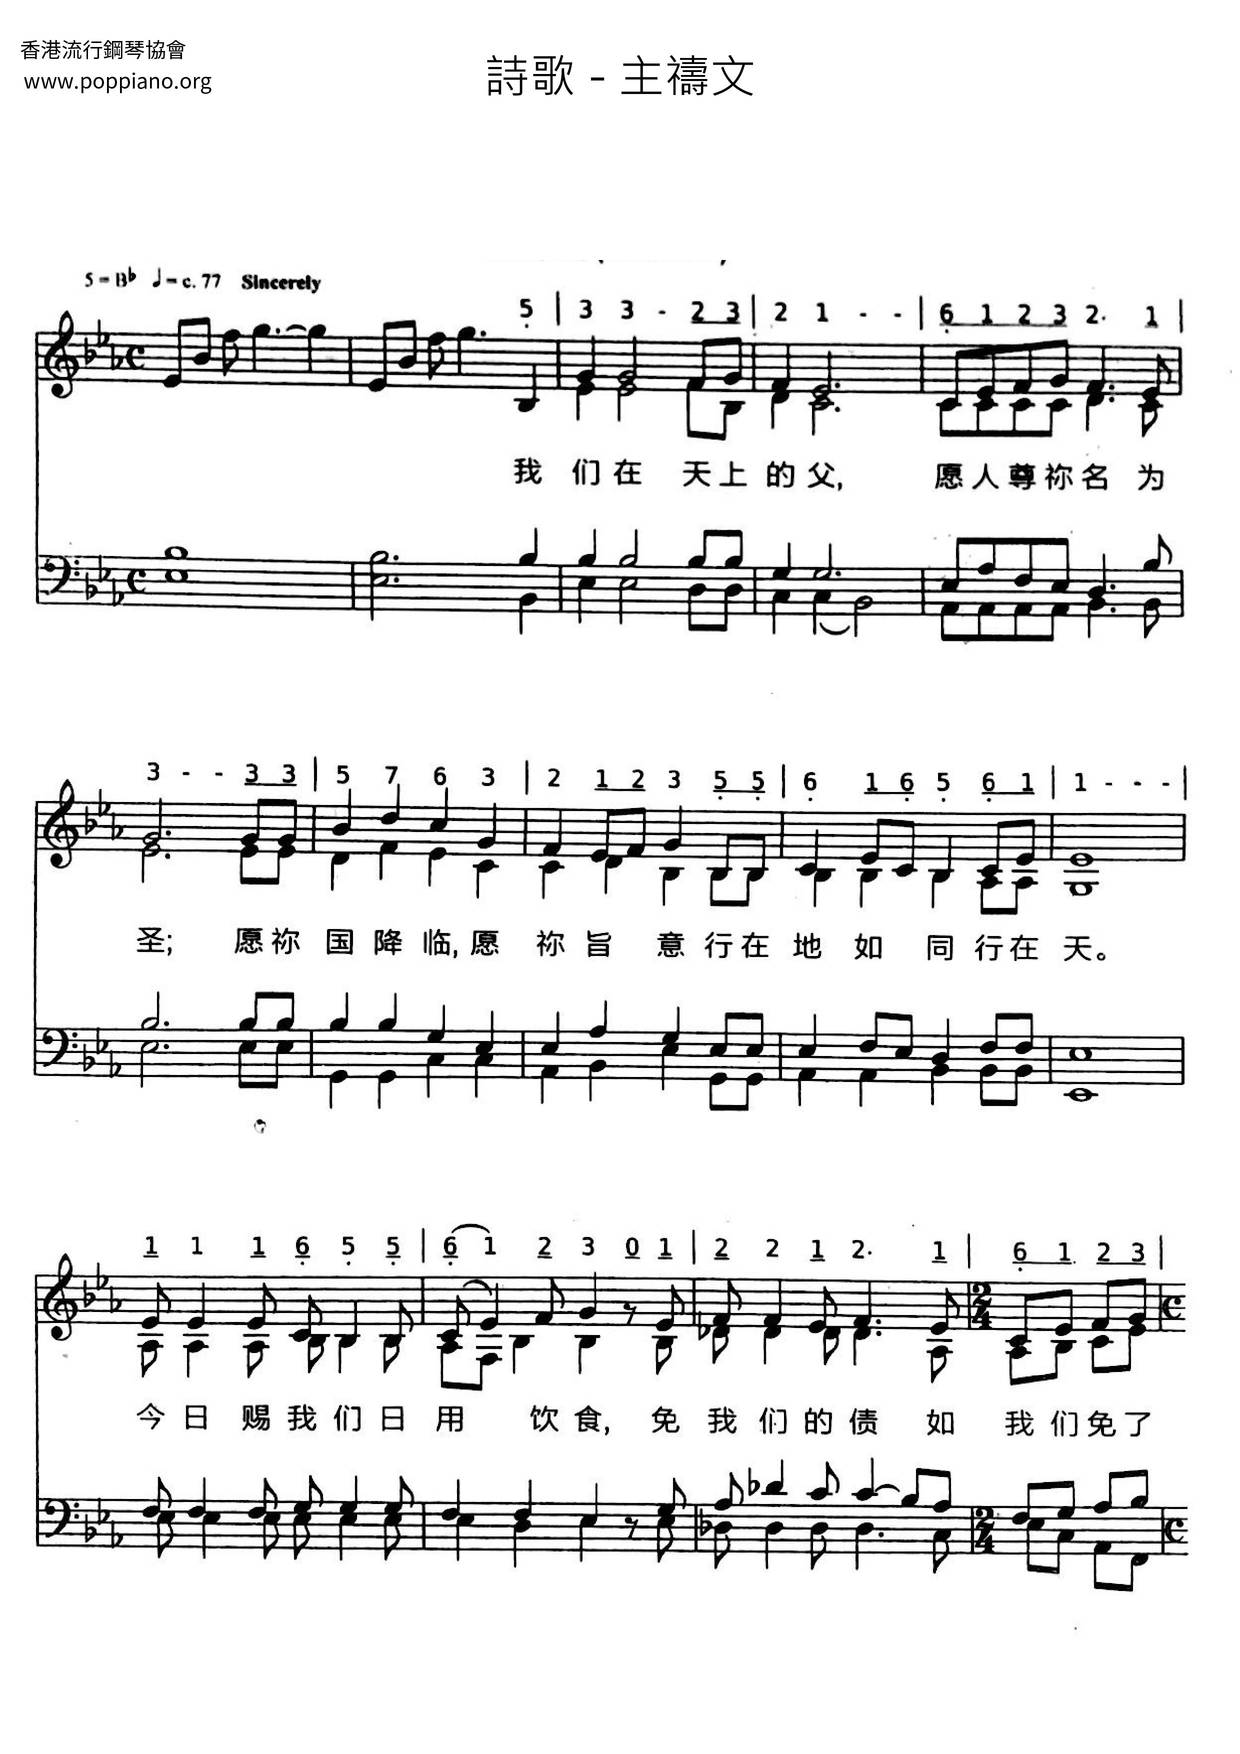 Lord's Prayer Score